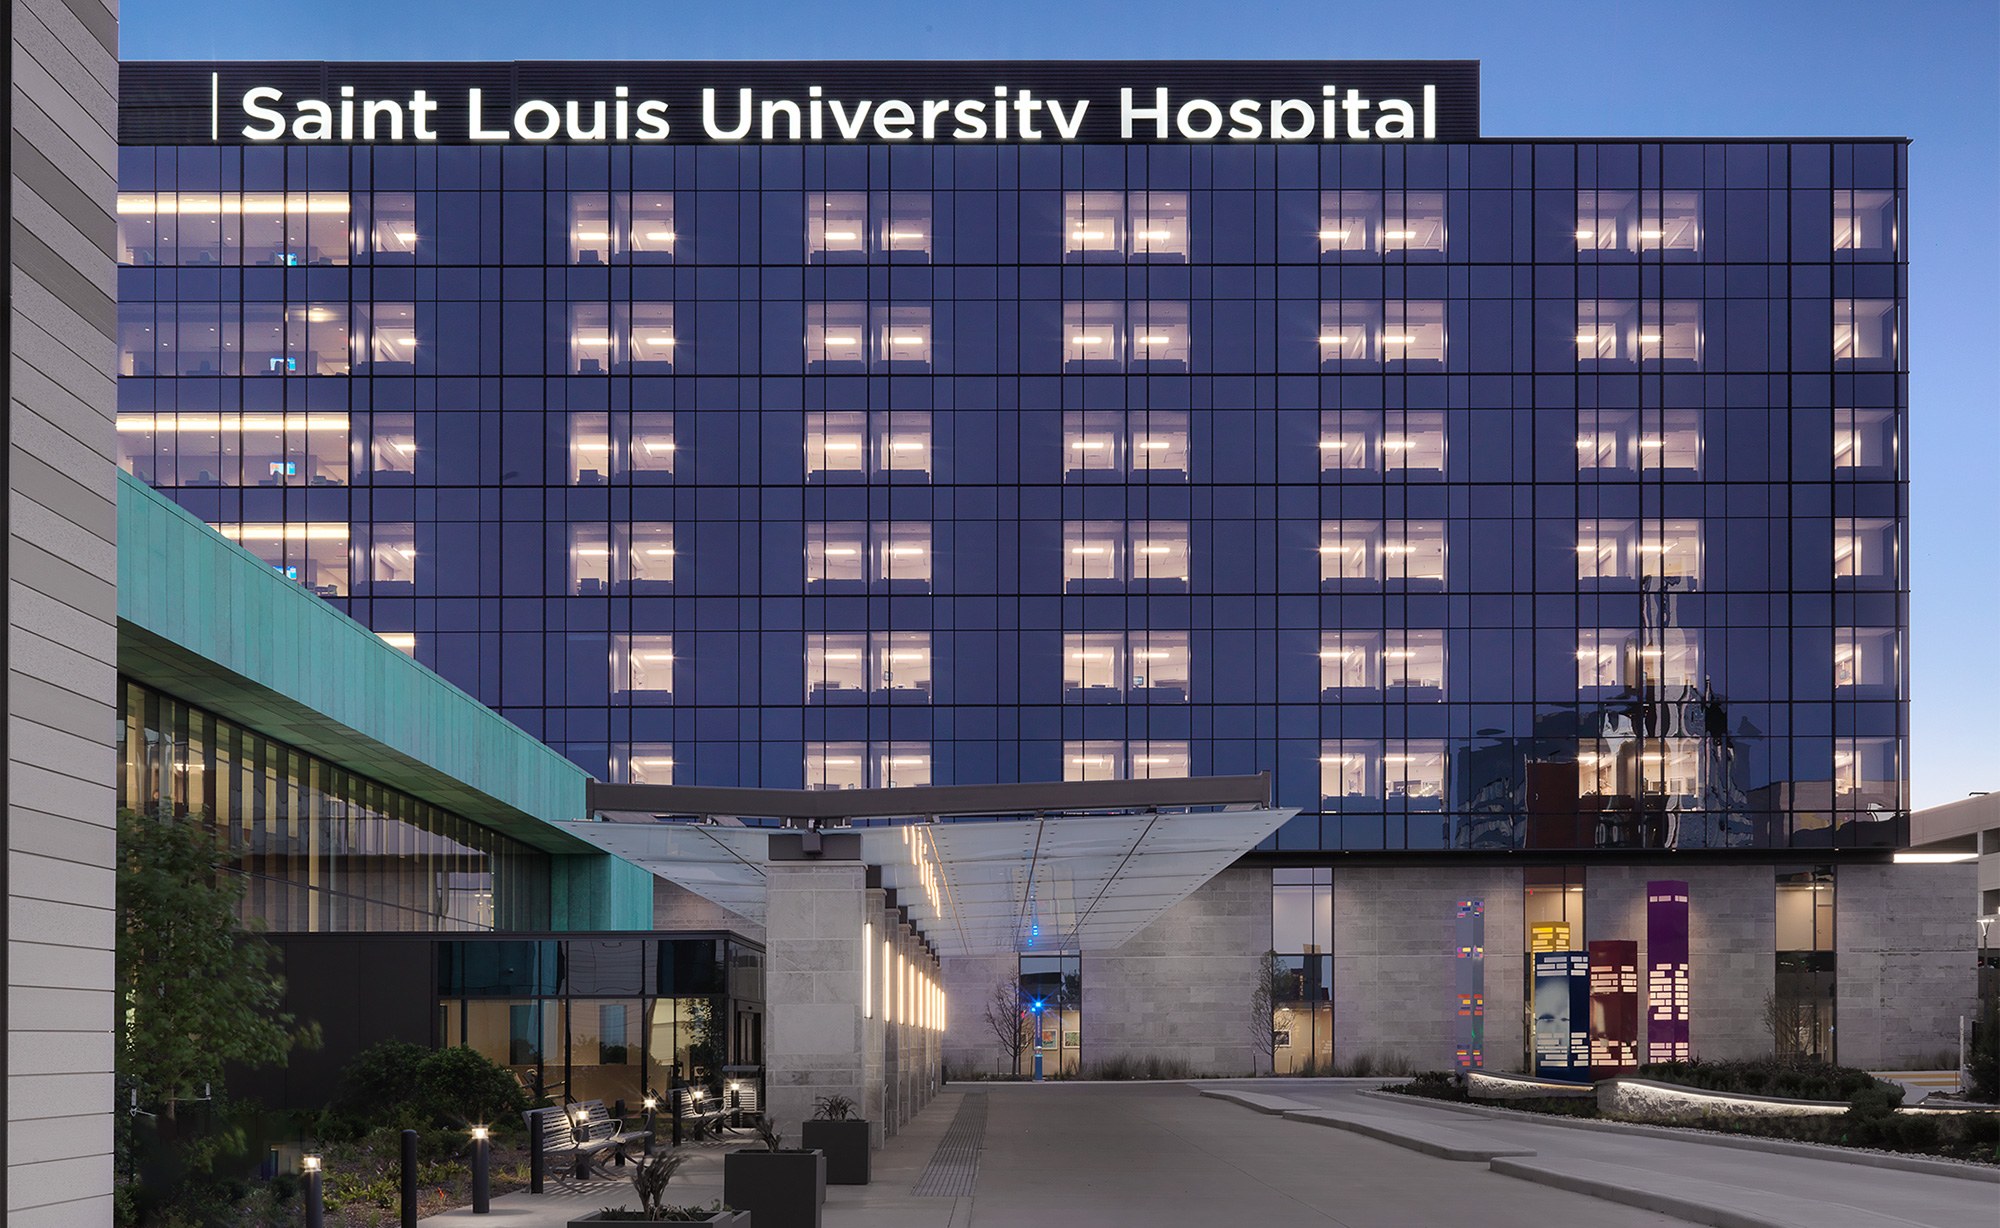 SLU Hospital, St. Louis